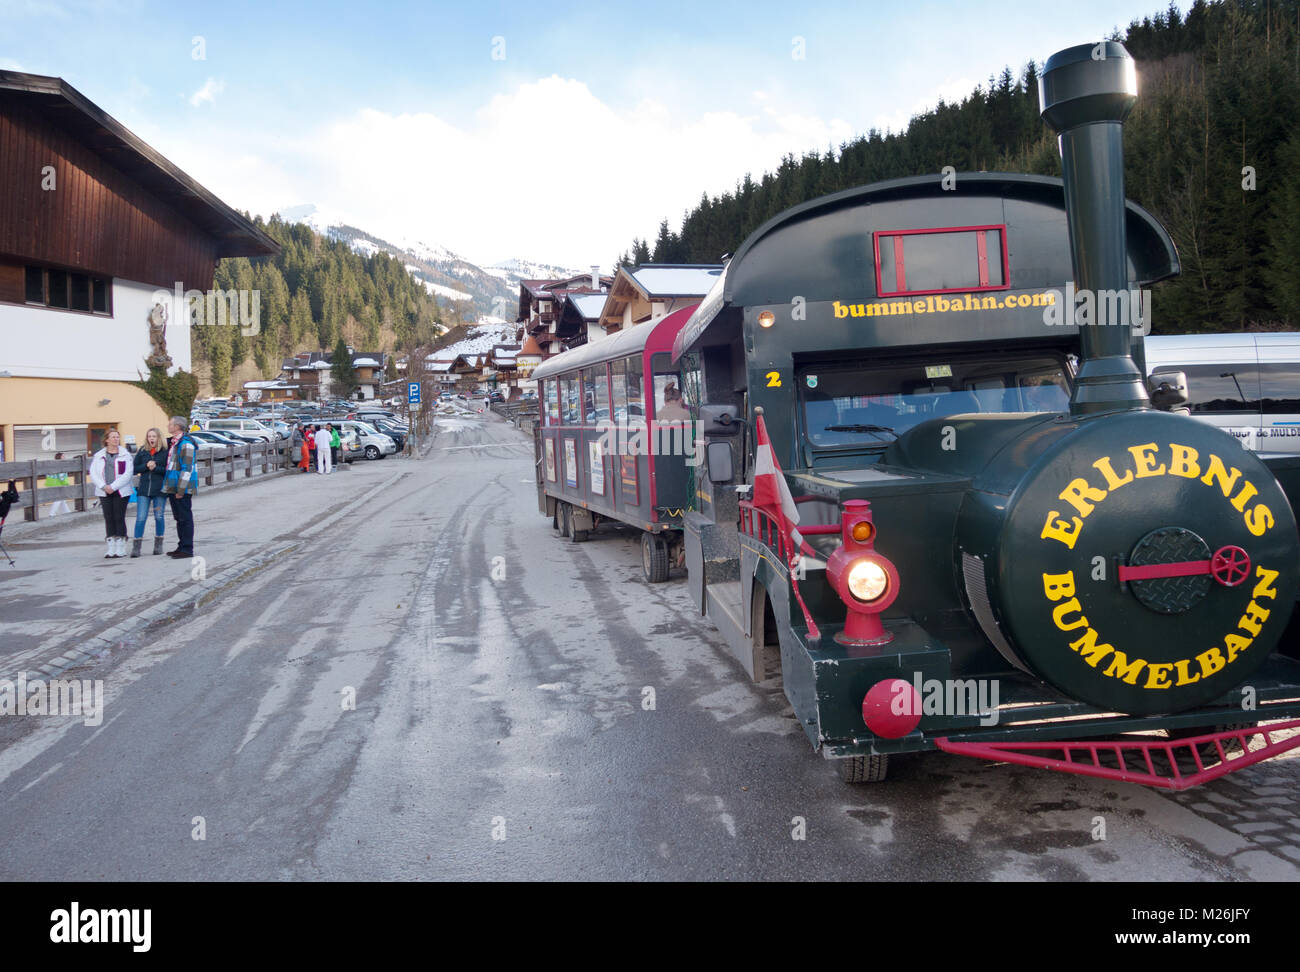 Stazione di sci ( Bummelbahn ) trasporti, nel villaggio di Auffach, Austria, Europa Foto Stock